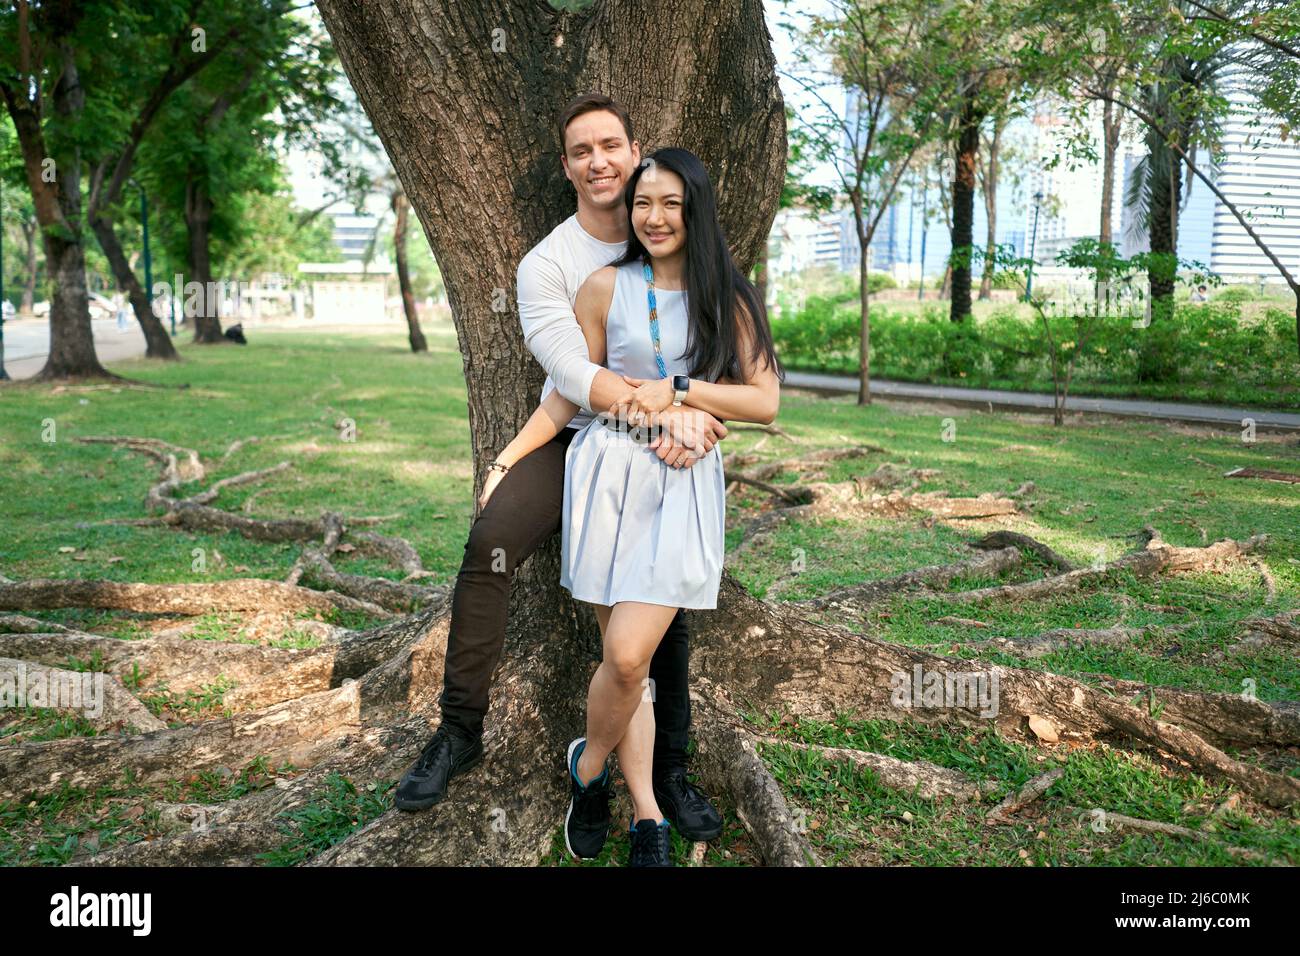 Coppia multirazziale sposata di recente che si abbraccia contro un albero Foto Stock